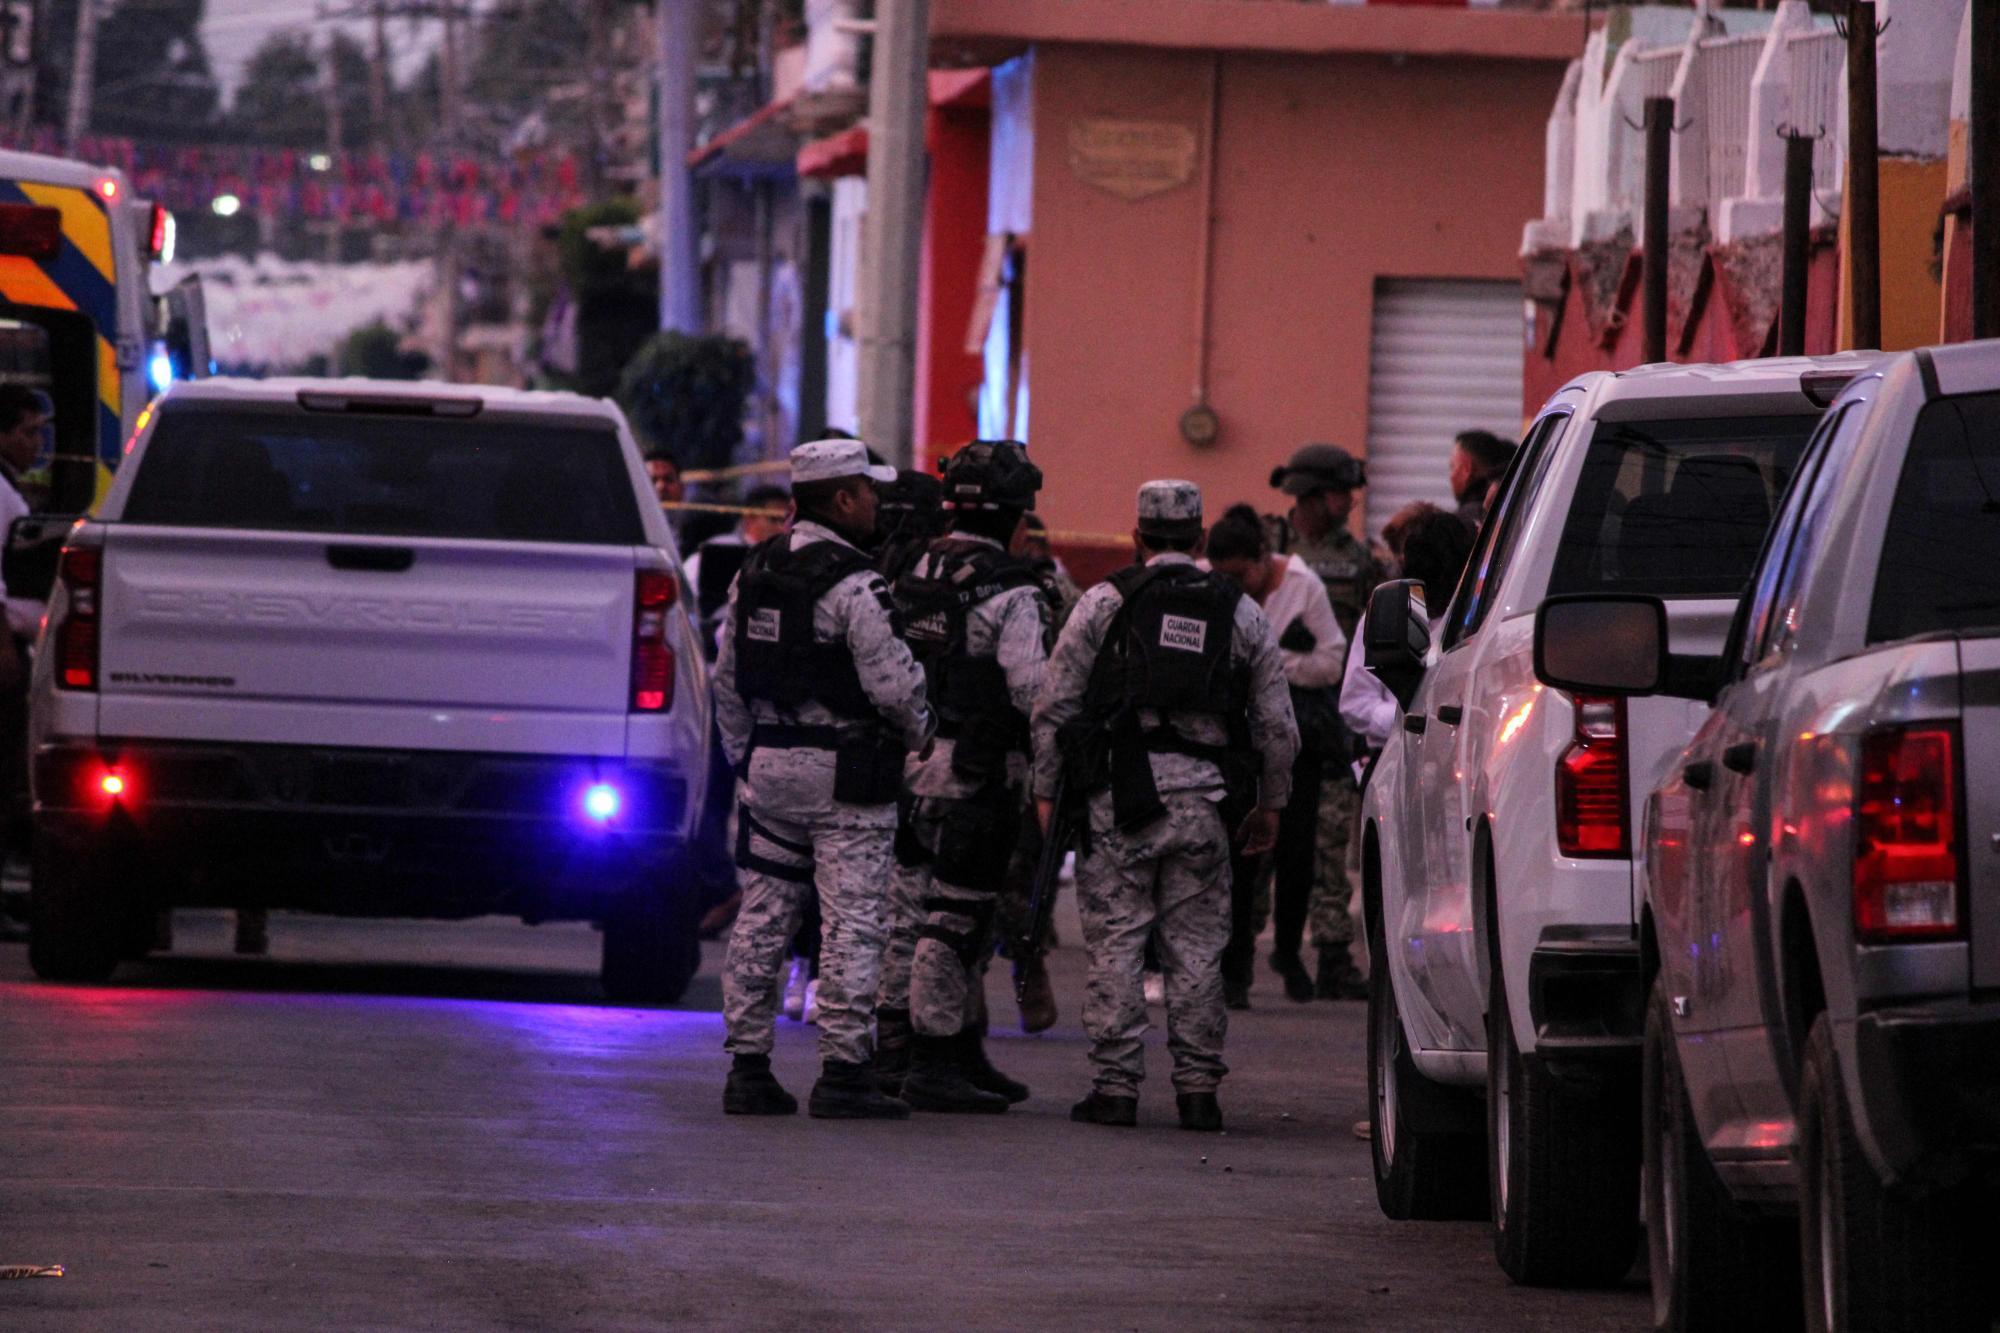 Blutiger Wahlkampf in Mexiko: Bürgermeisterkandidatin auf offener Straße erschossen